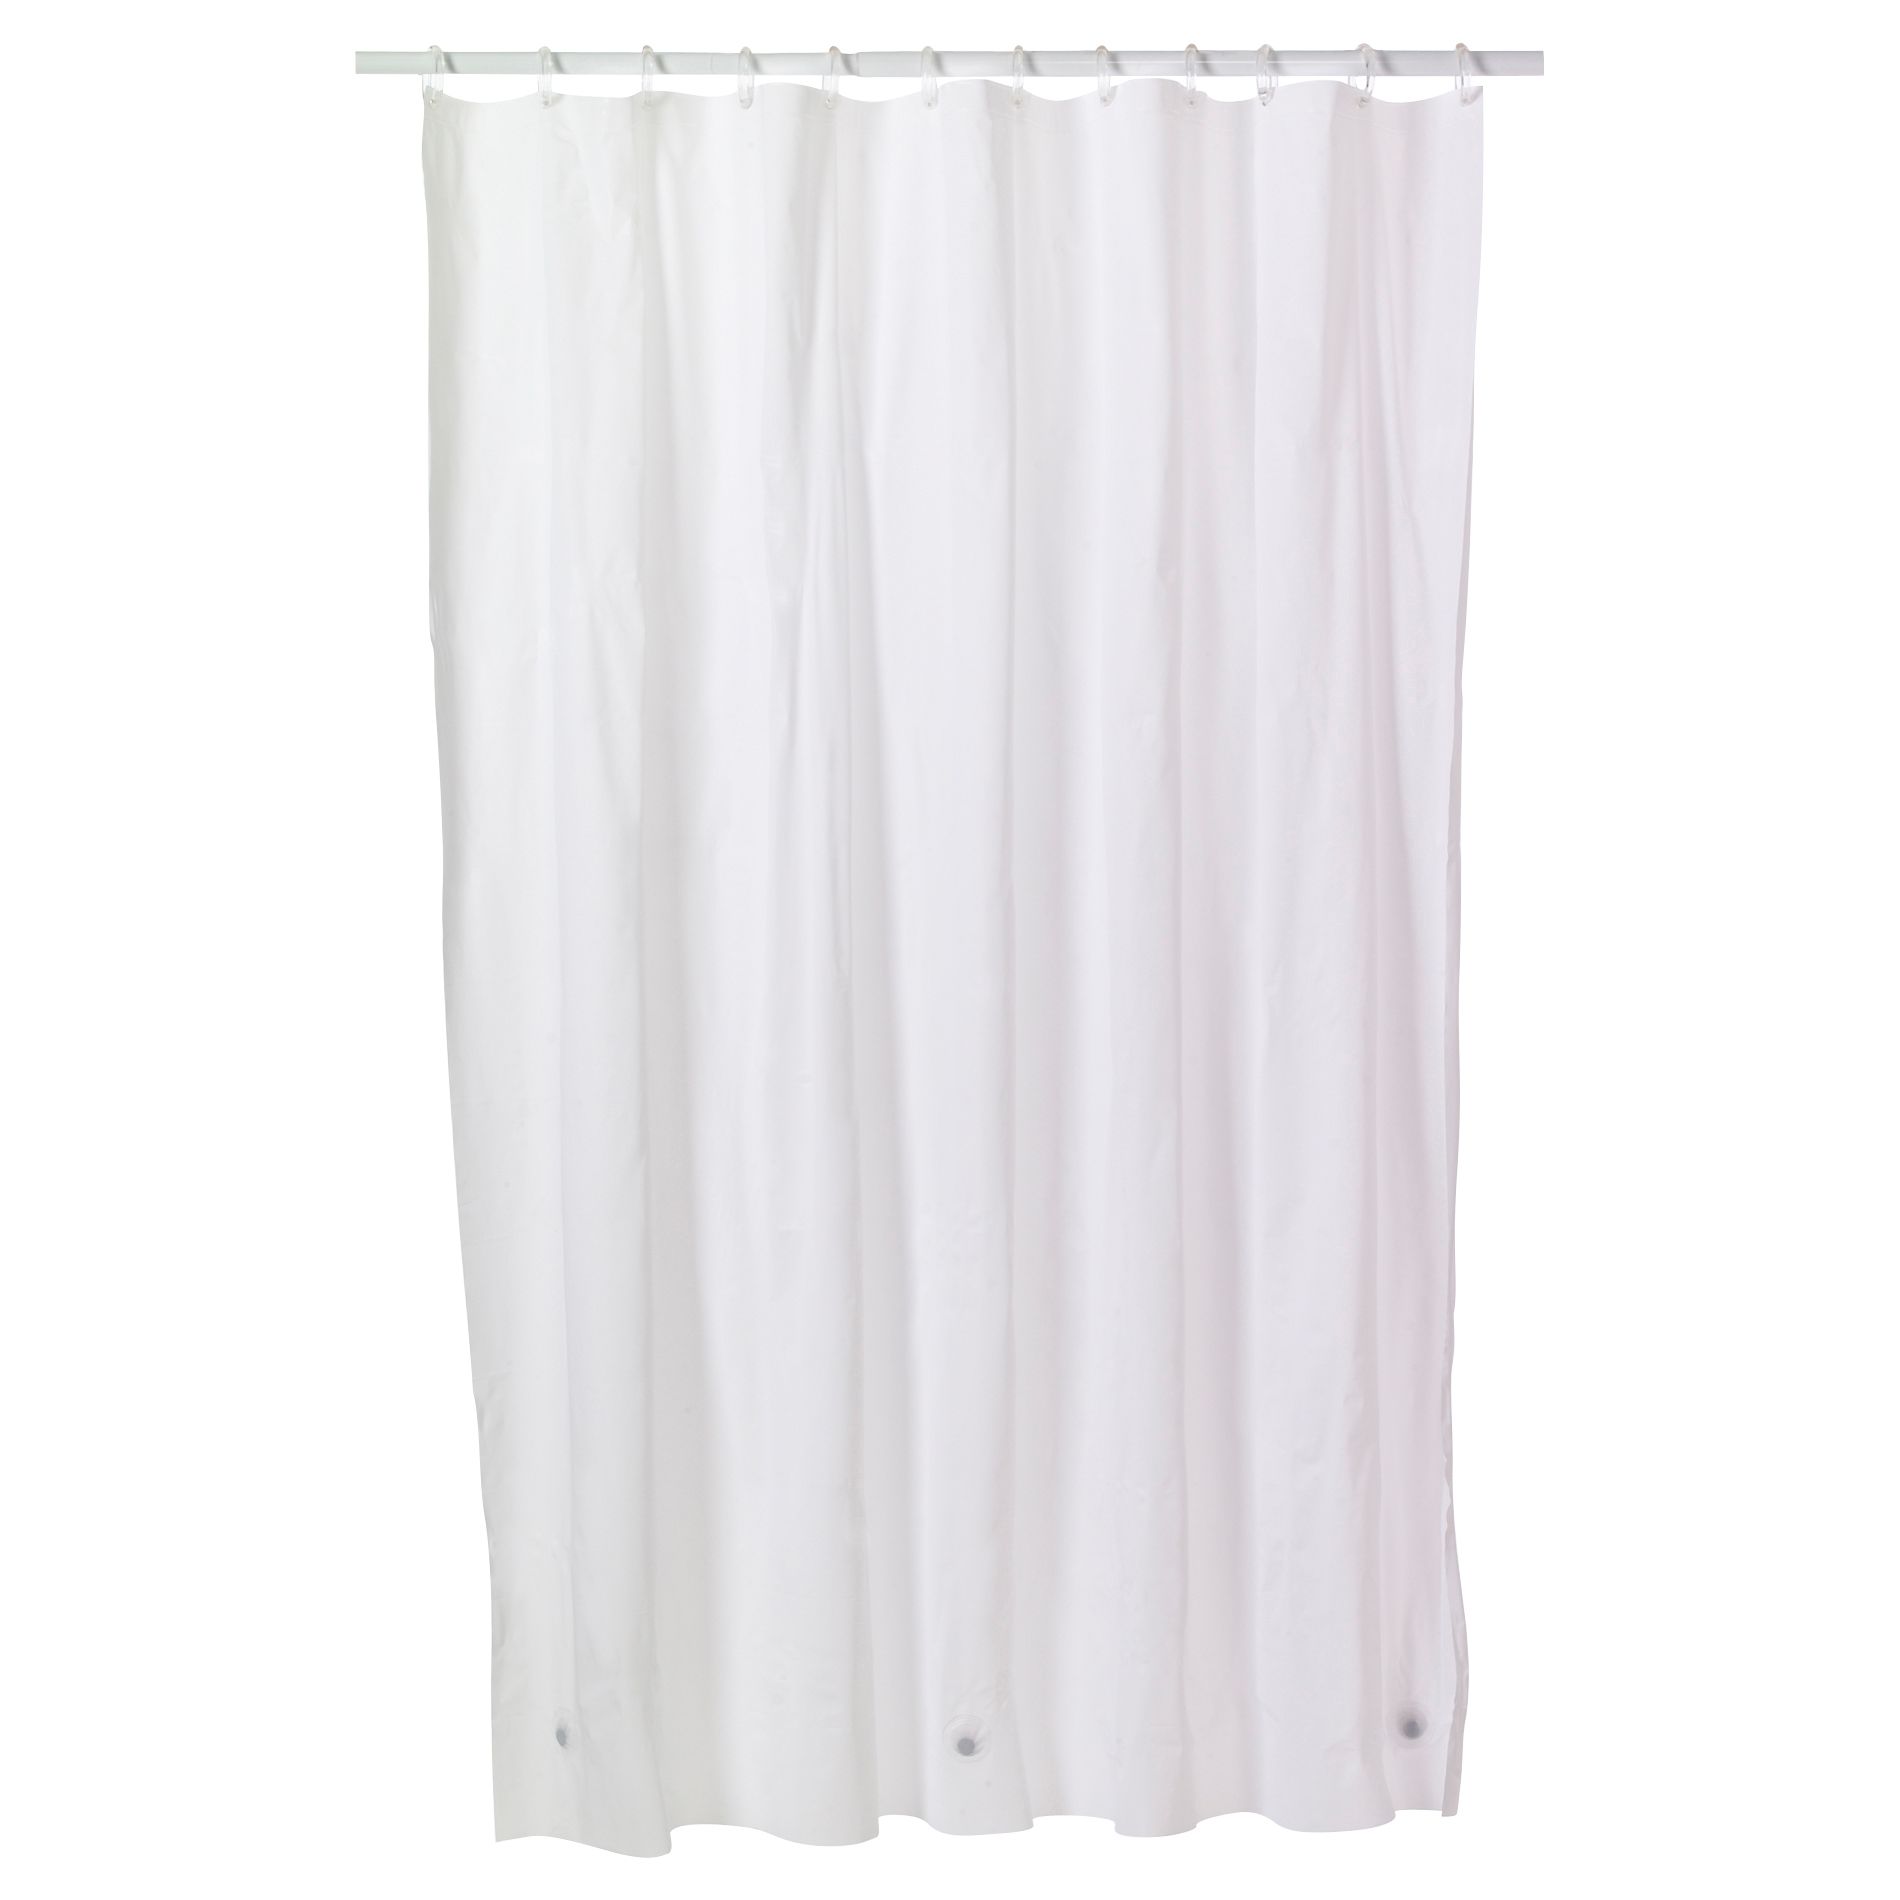 Shower Curtain Liner 3 Gauge Vinyl Peva, Vinyl Or Peva Shower Curtain